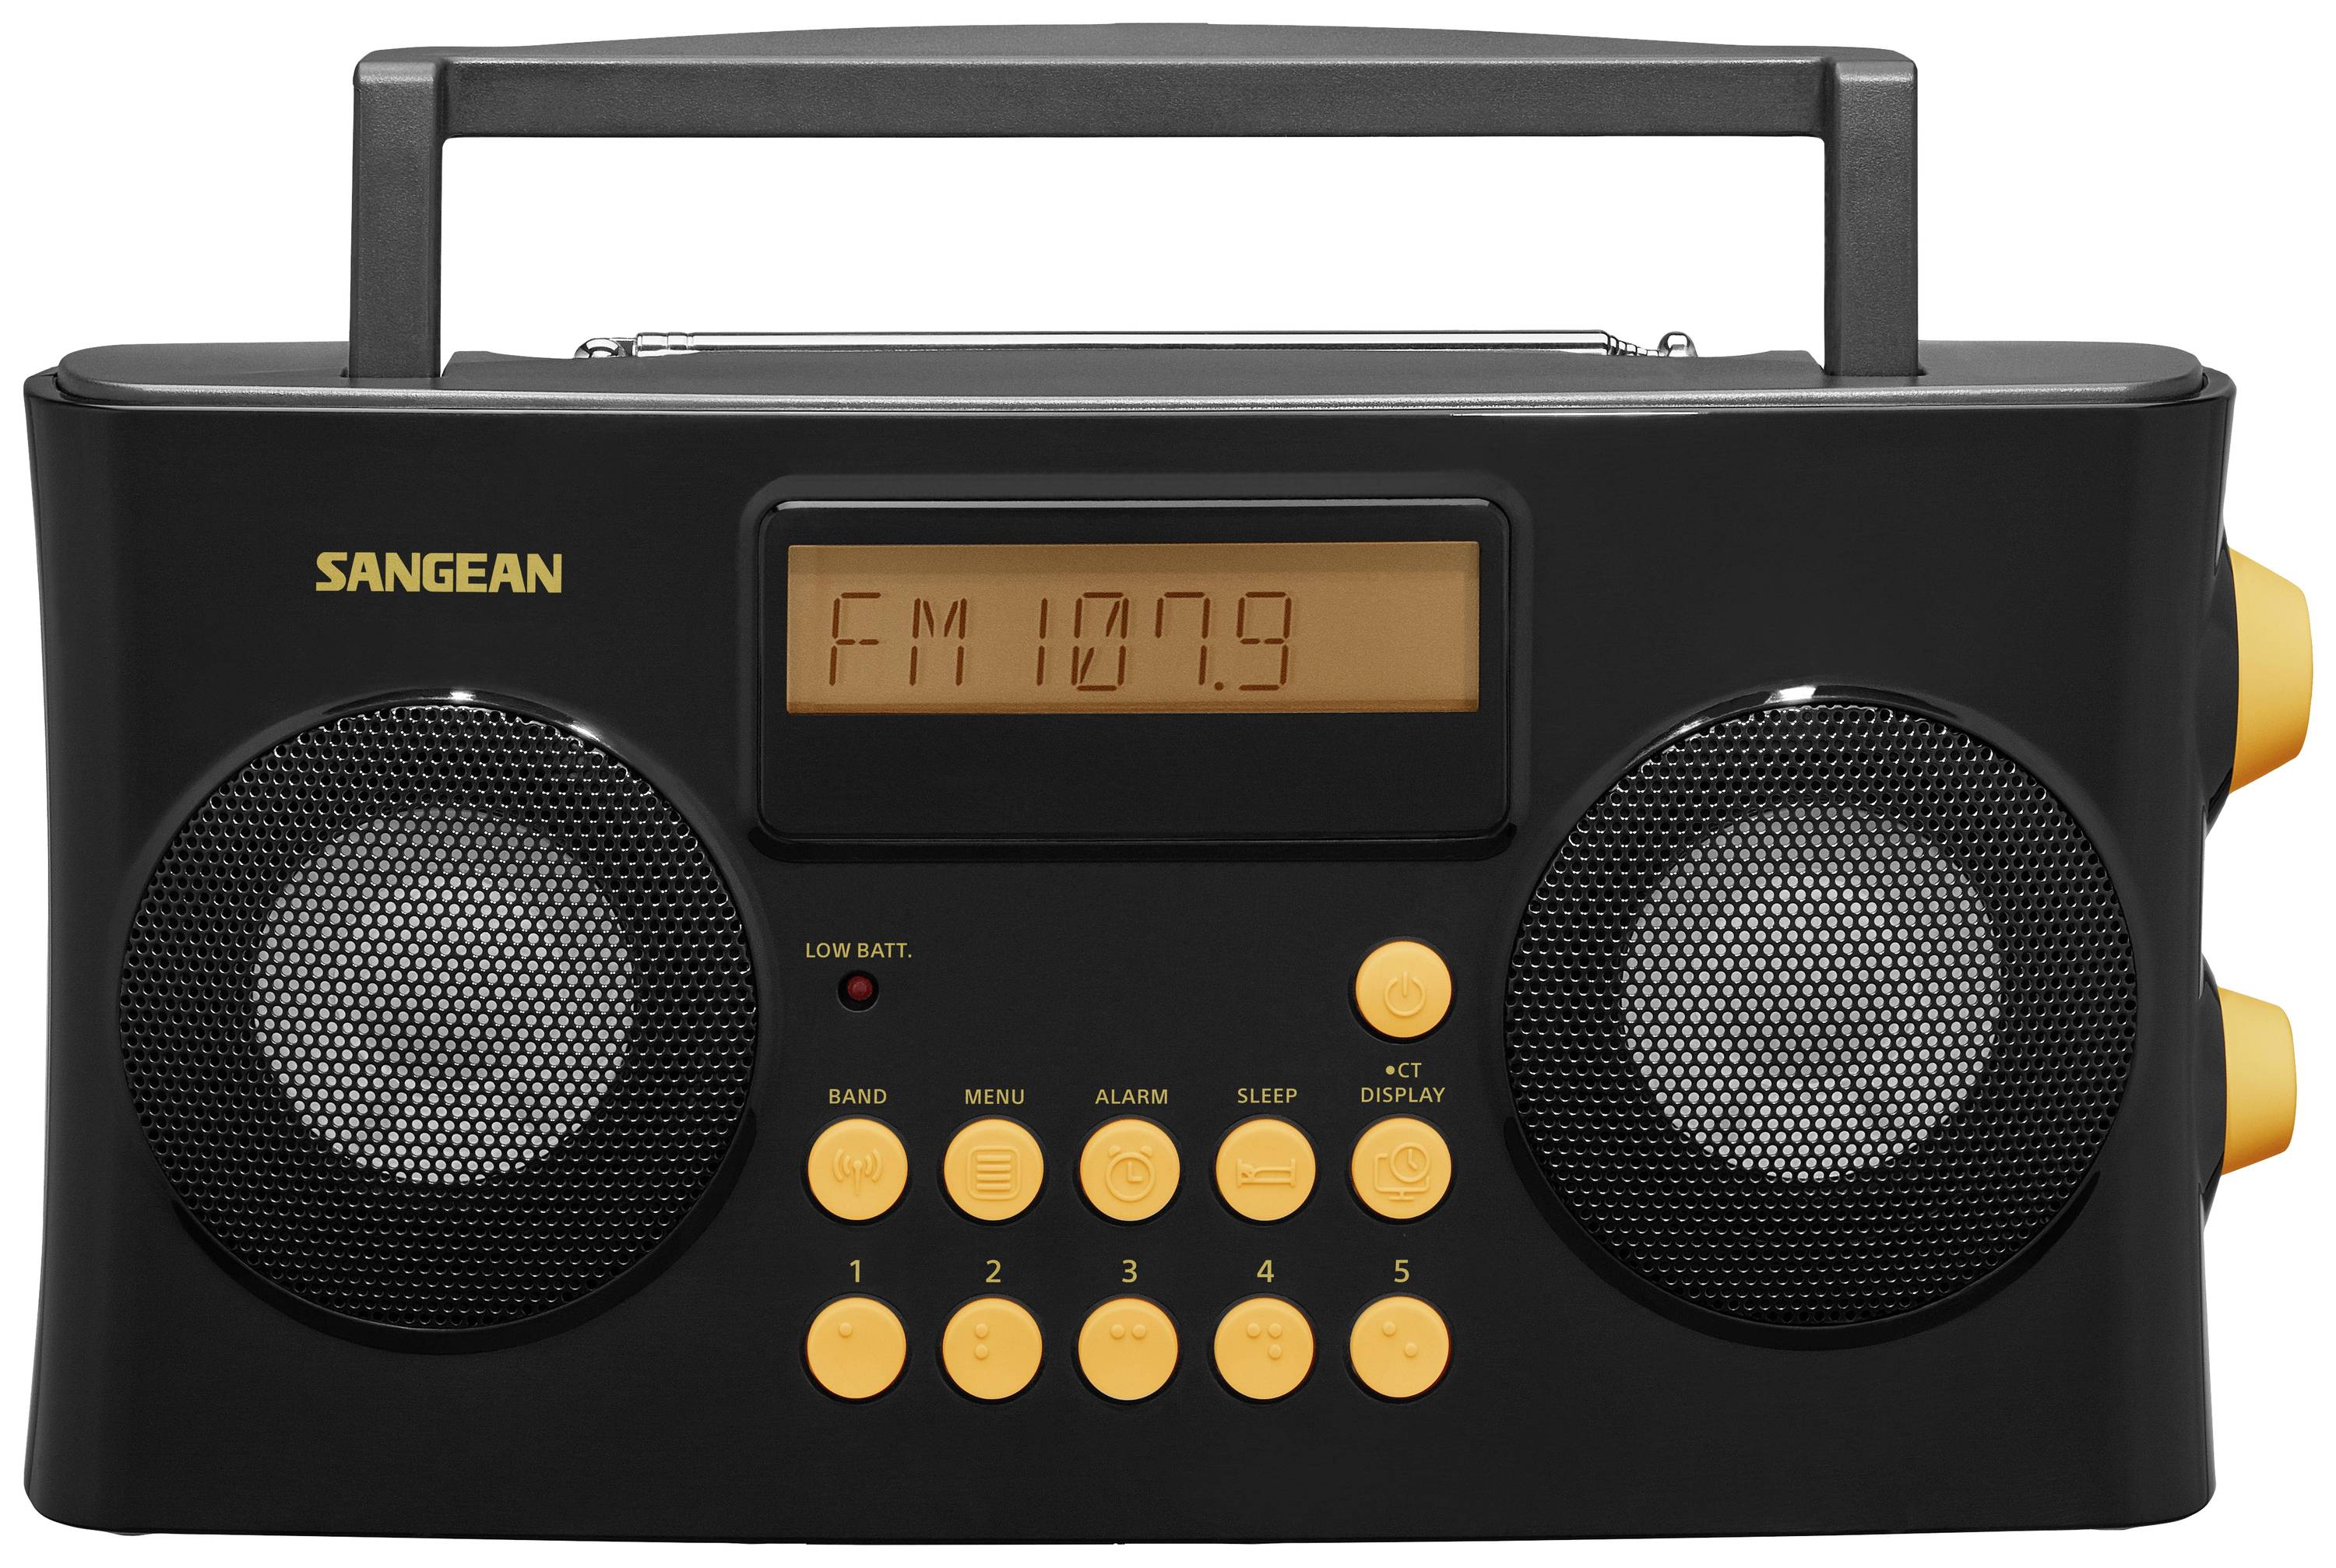 SANGEAN PR-D17 Taschenradio UKW, AM, FM AUX Sprachausgabe, Fühlbare Tasten, Weckfun